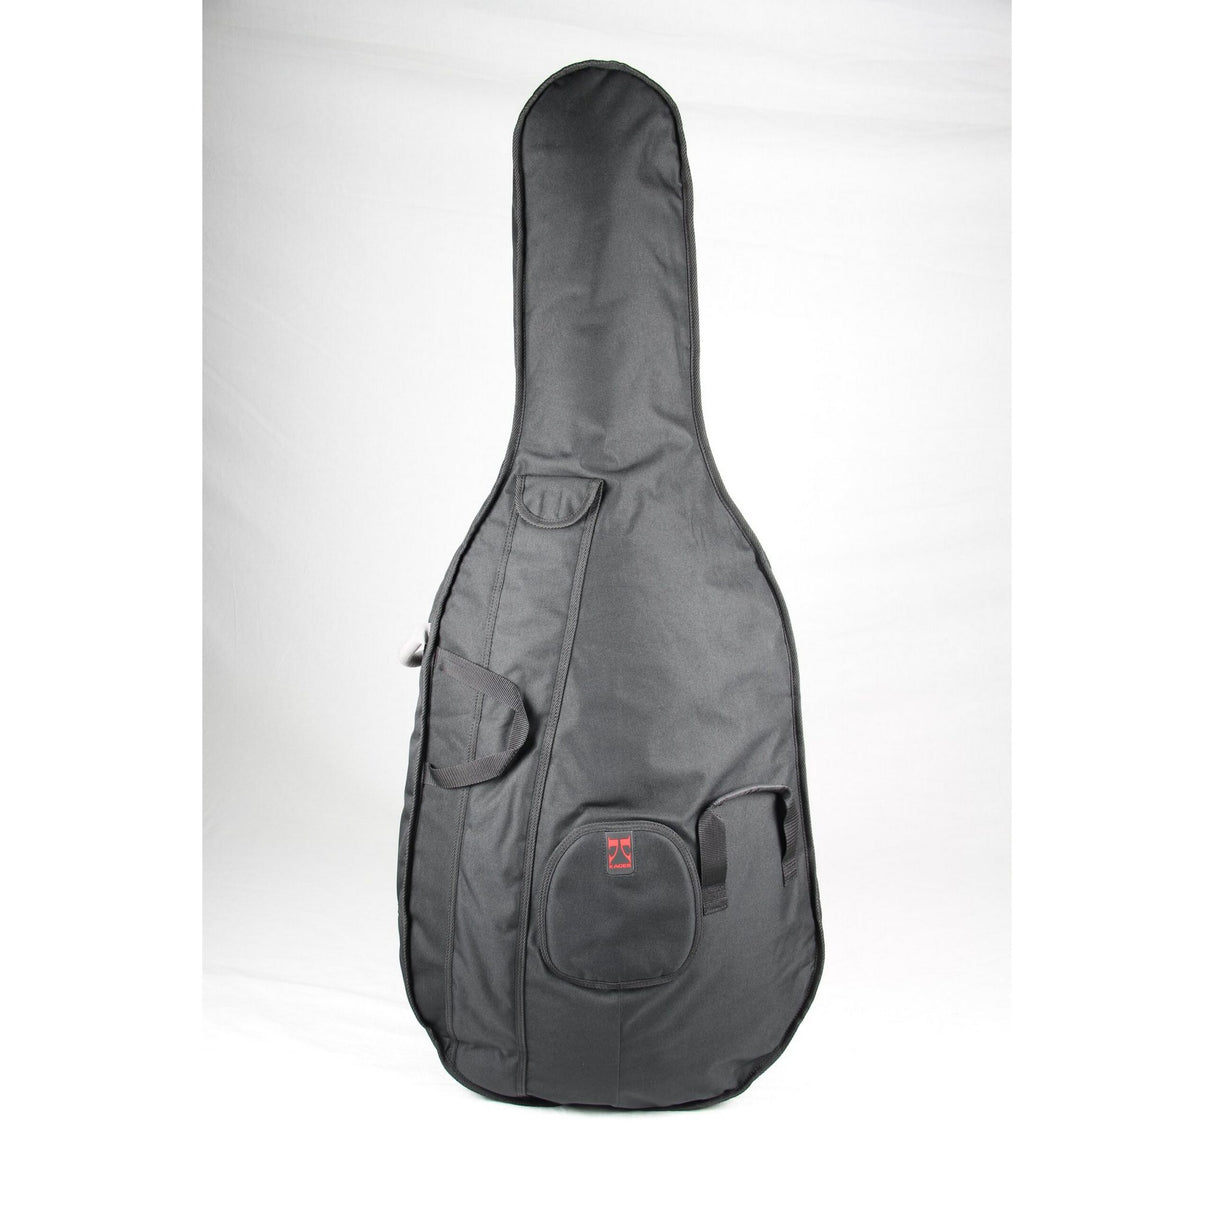 Kaces UKUB-1/2 University Series 1/2 Size Bass Bag